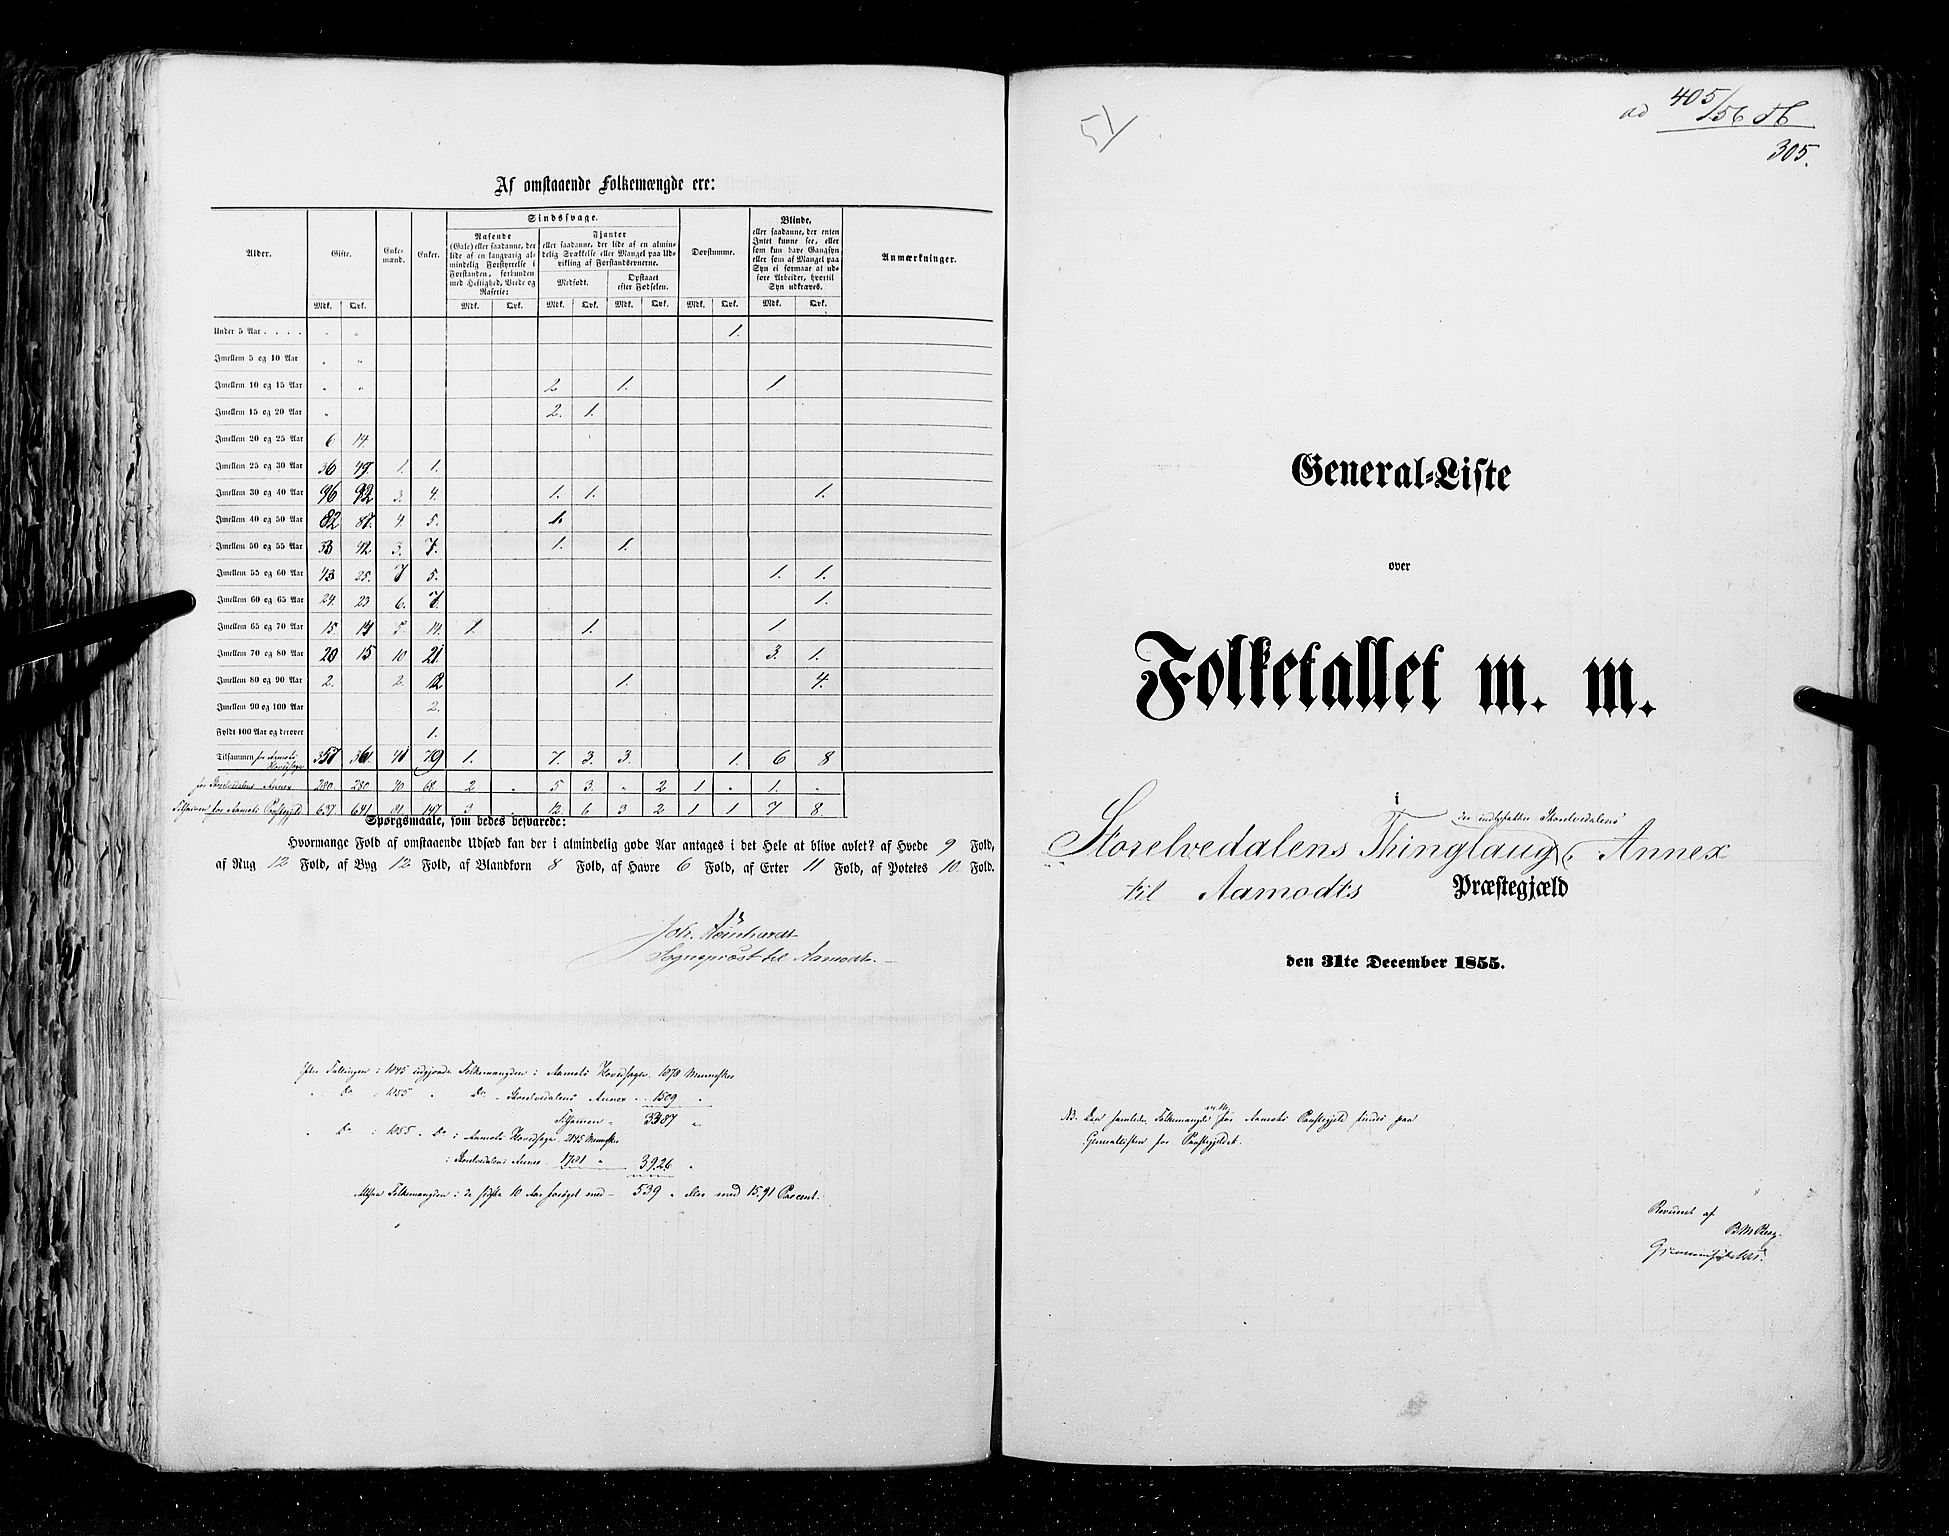 RA, Folketellingen 1855, bind 1: Akershus amt, Smålenenes amt og Hedemarken amt, 1855, s. 305